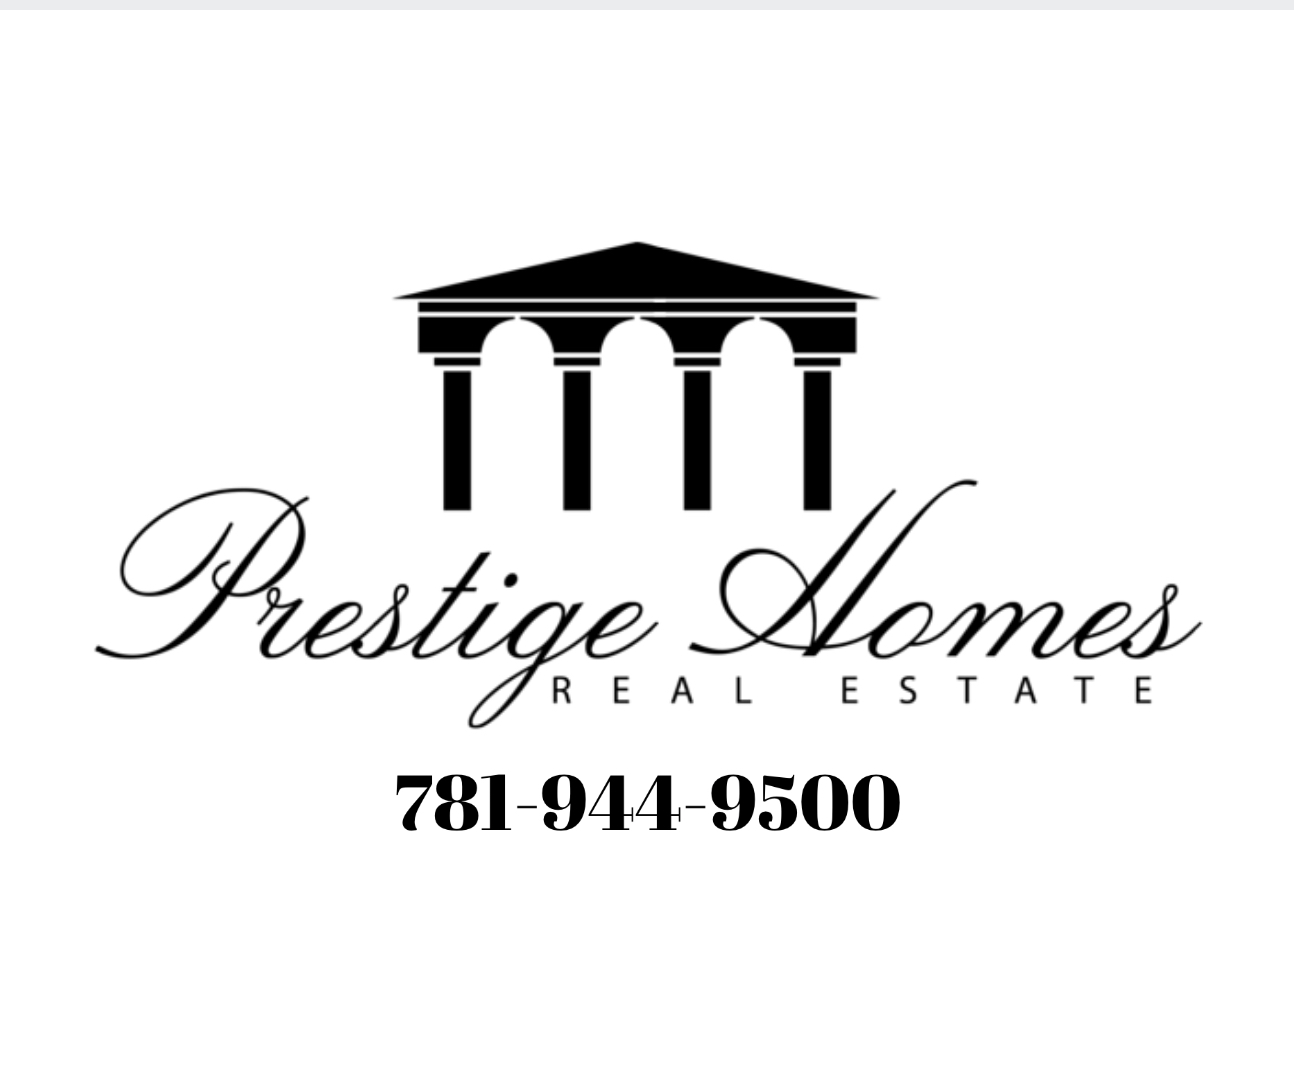 Prestige Homes Real Estate